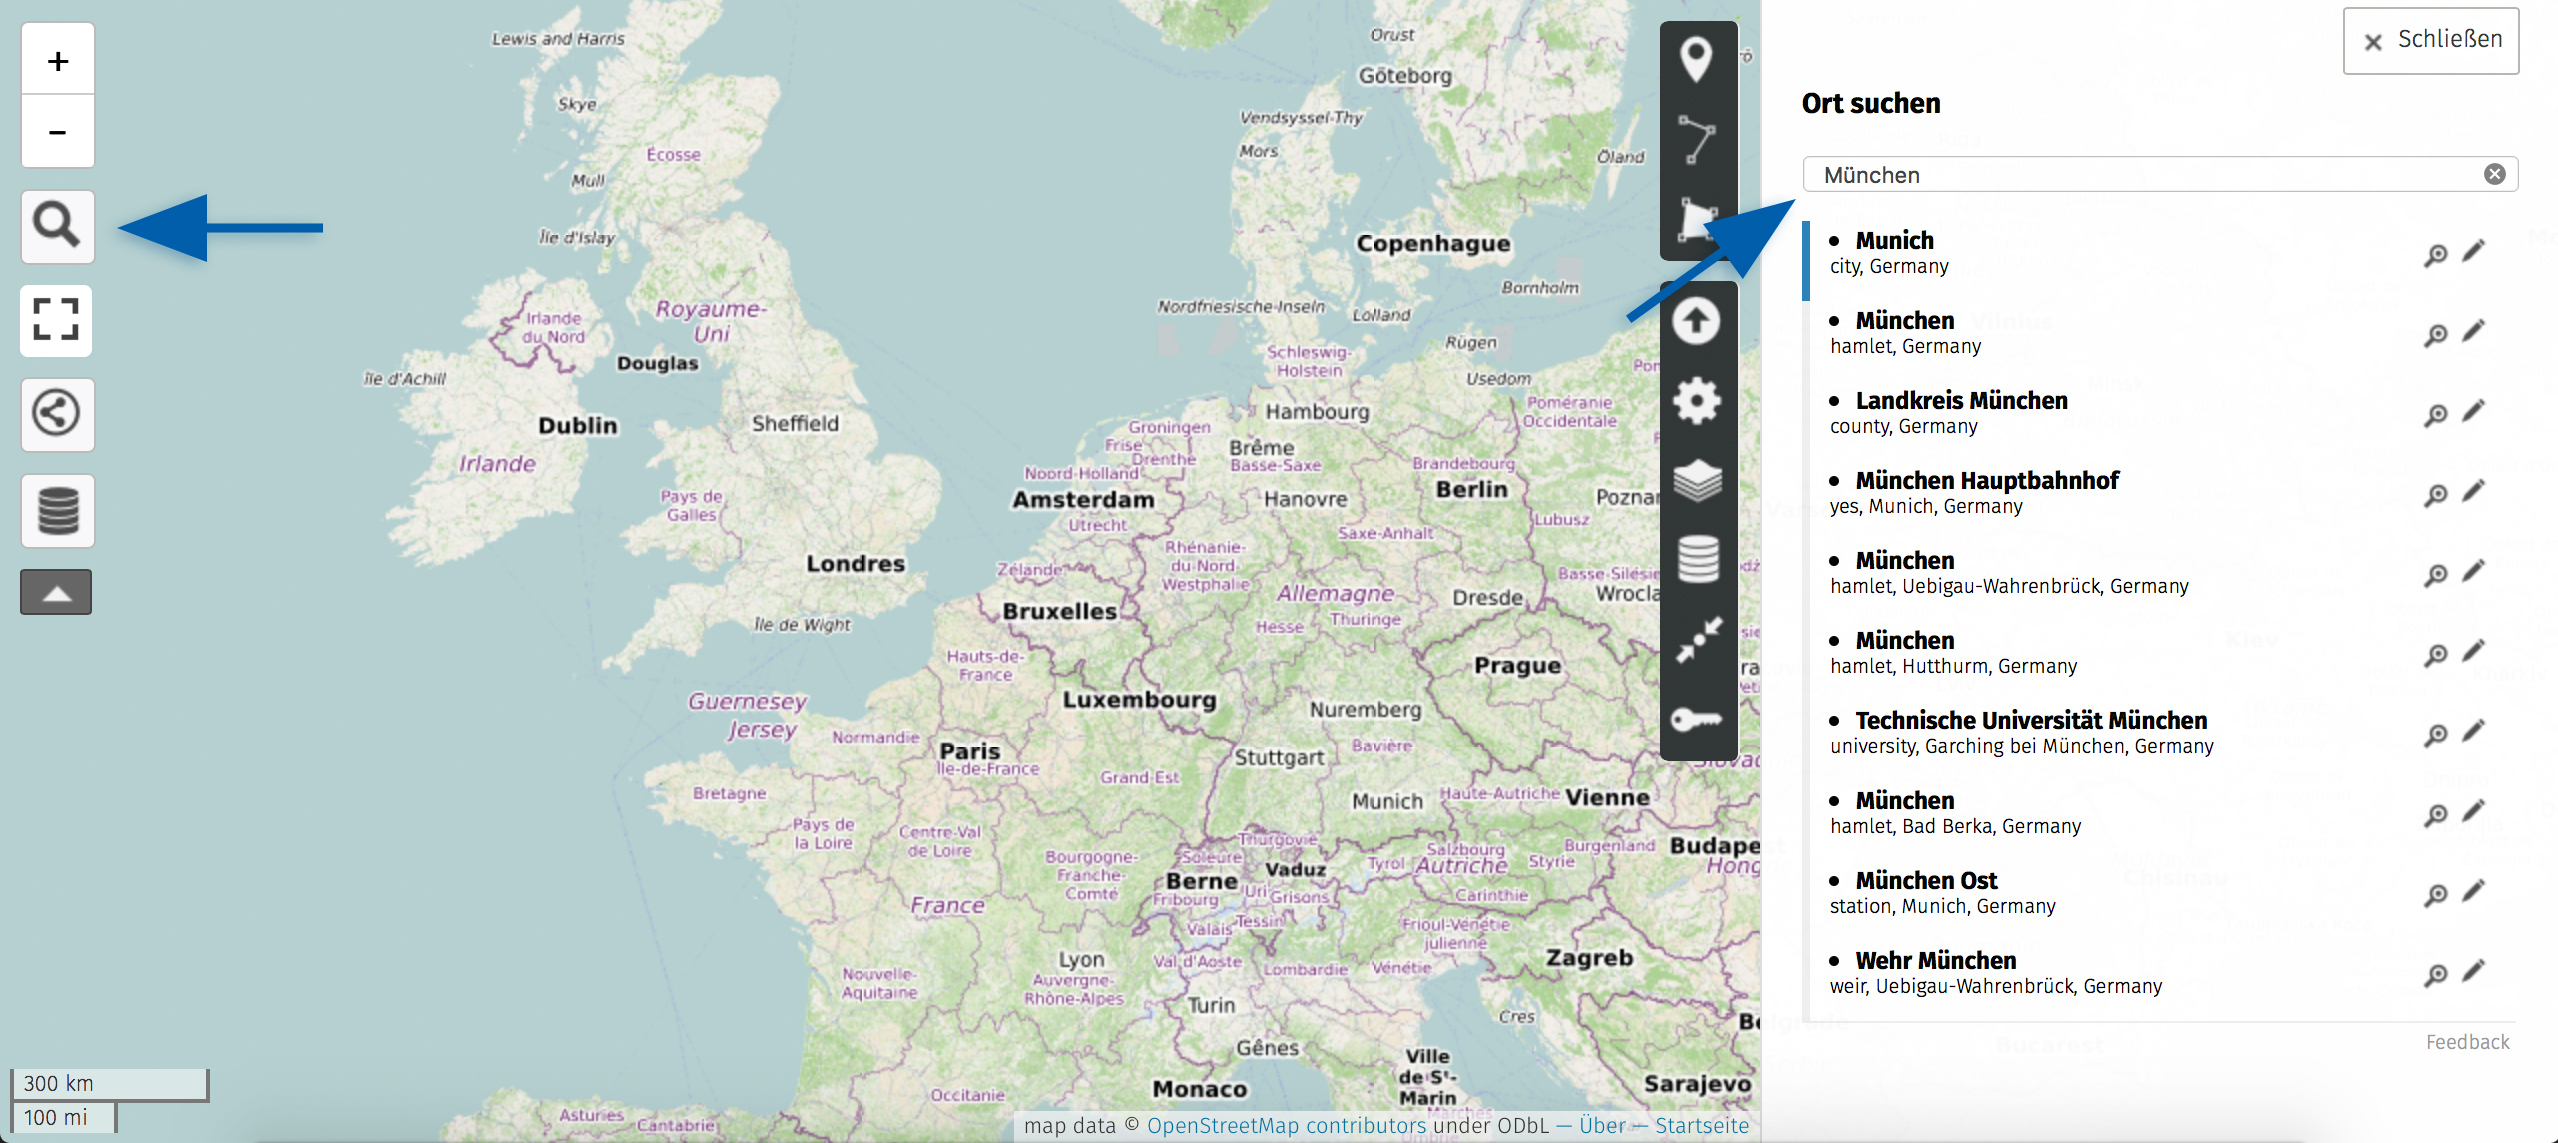 Karten Drucken Lassen Mit Openstreetmap - Myposter Magazin verwandt mit Landkarten Drucken